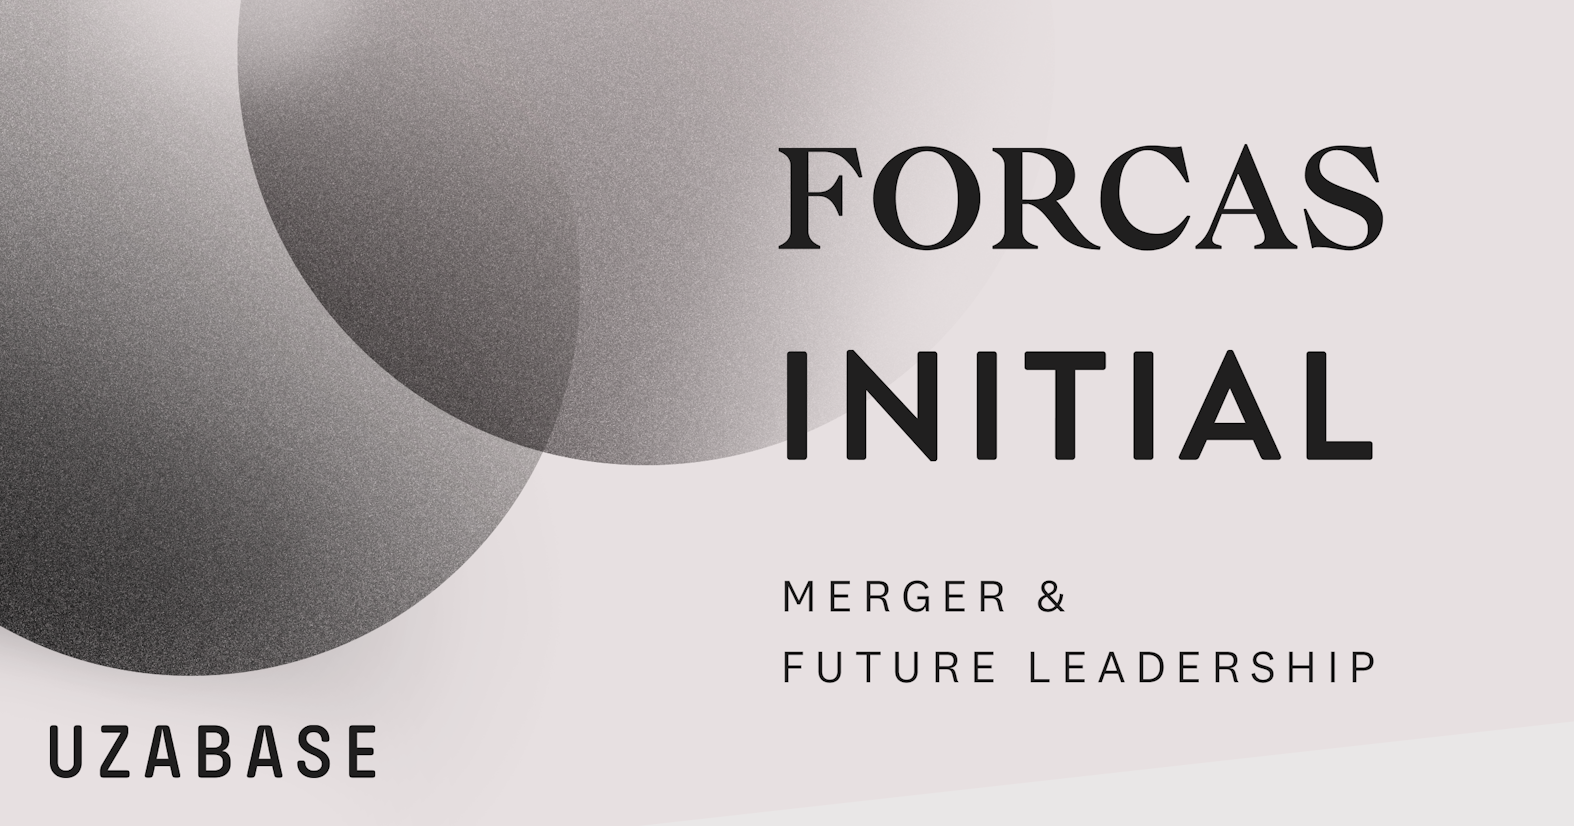 ユーザベース、FORCAS、INITIAL事業をユーザベースに統合し、新執行役員・事業CEOが就任。